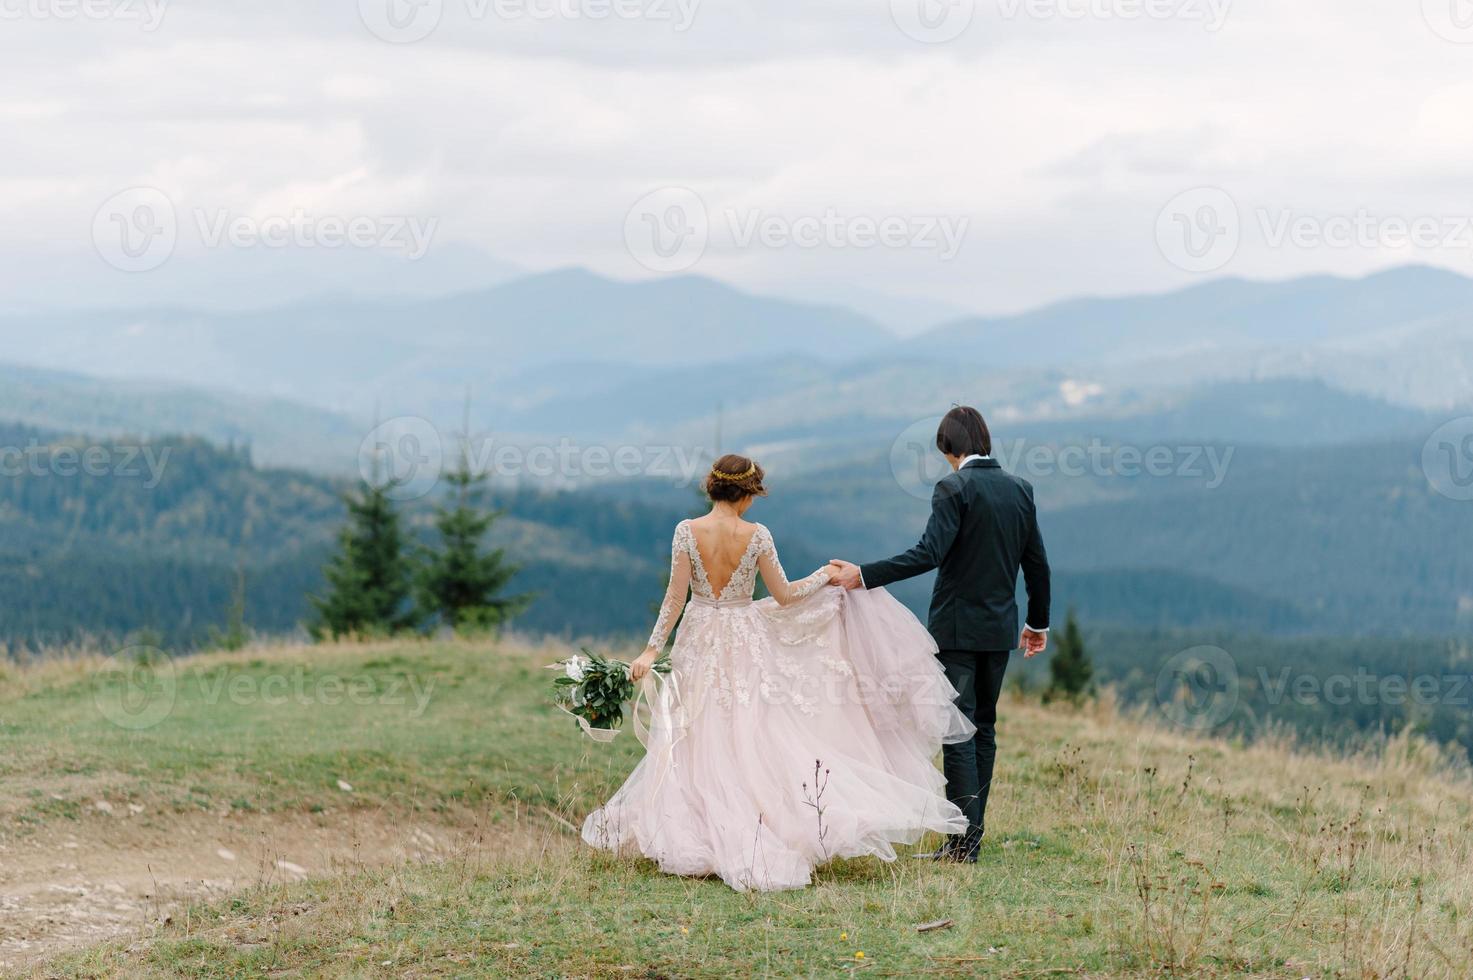 prachtig bruidspaar zoenen en omhelzen in de buurt van de oever van een bergrivier met stenen foto